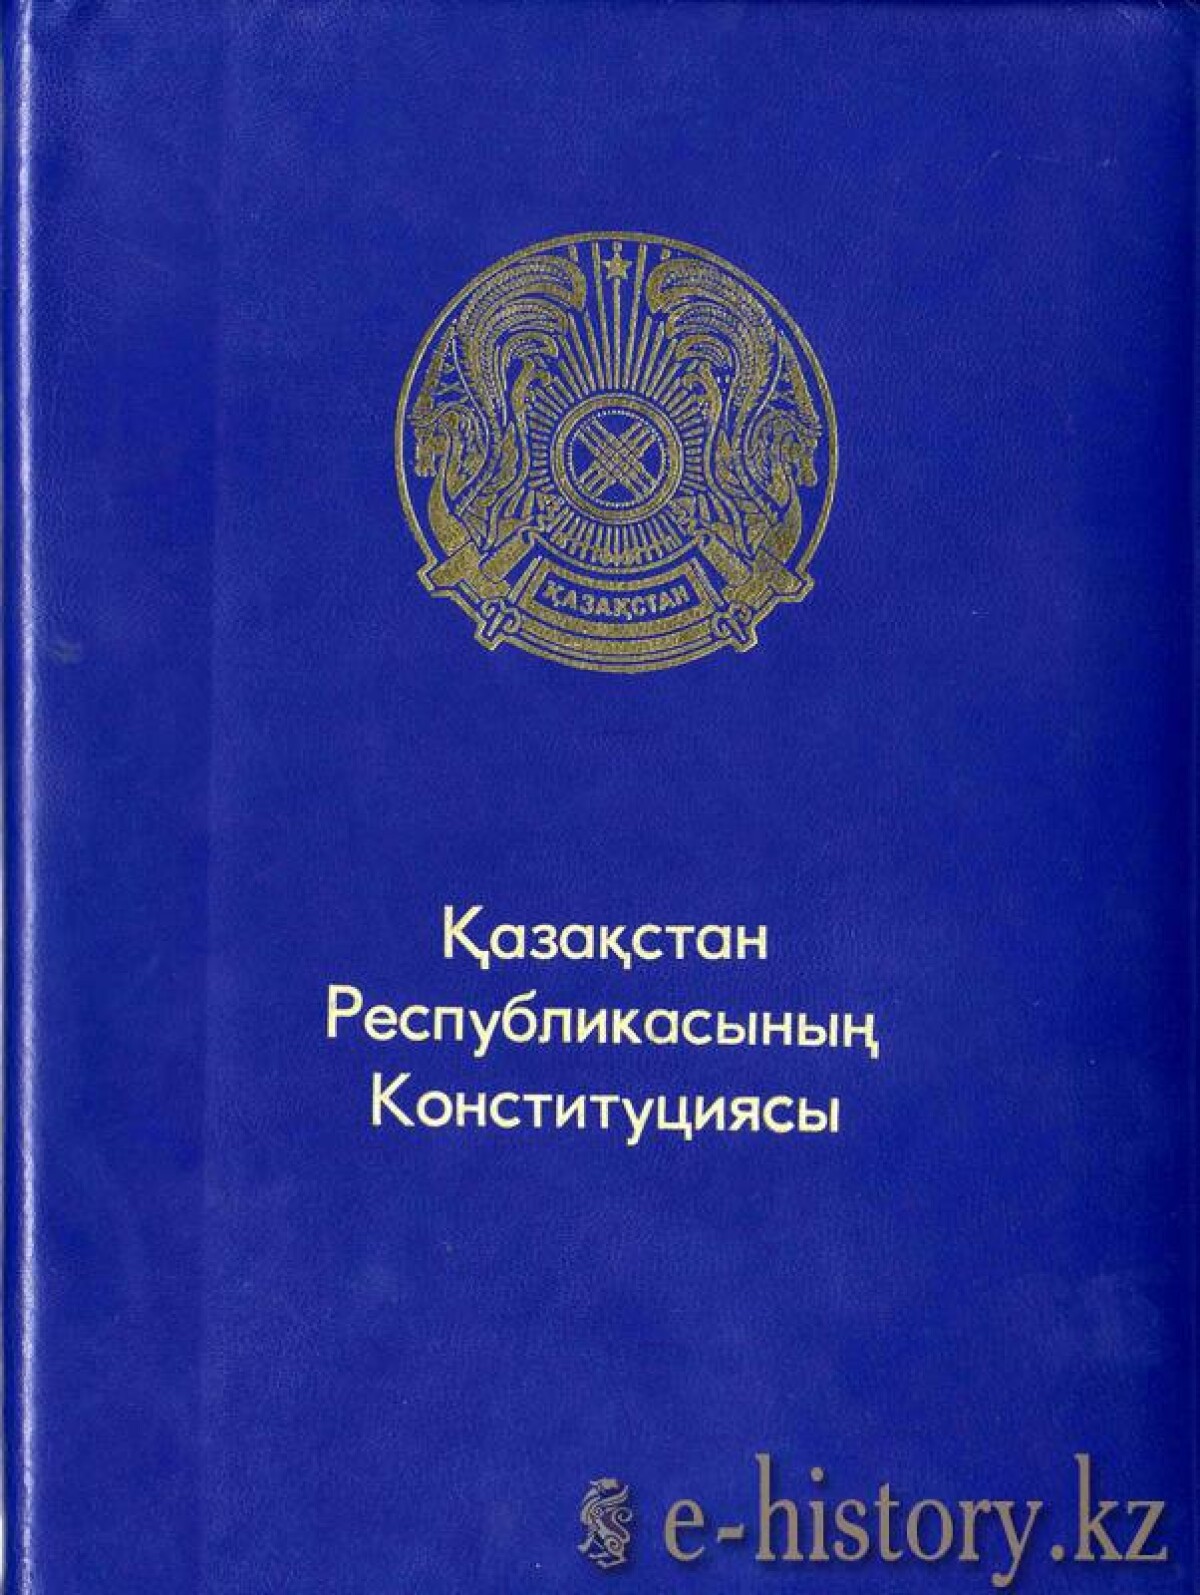 Қазақстан Республикасының тұңғыш Конституциясының жобасы - e-history.kz